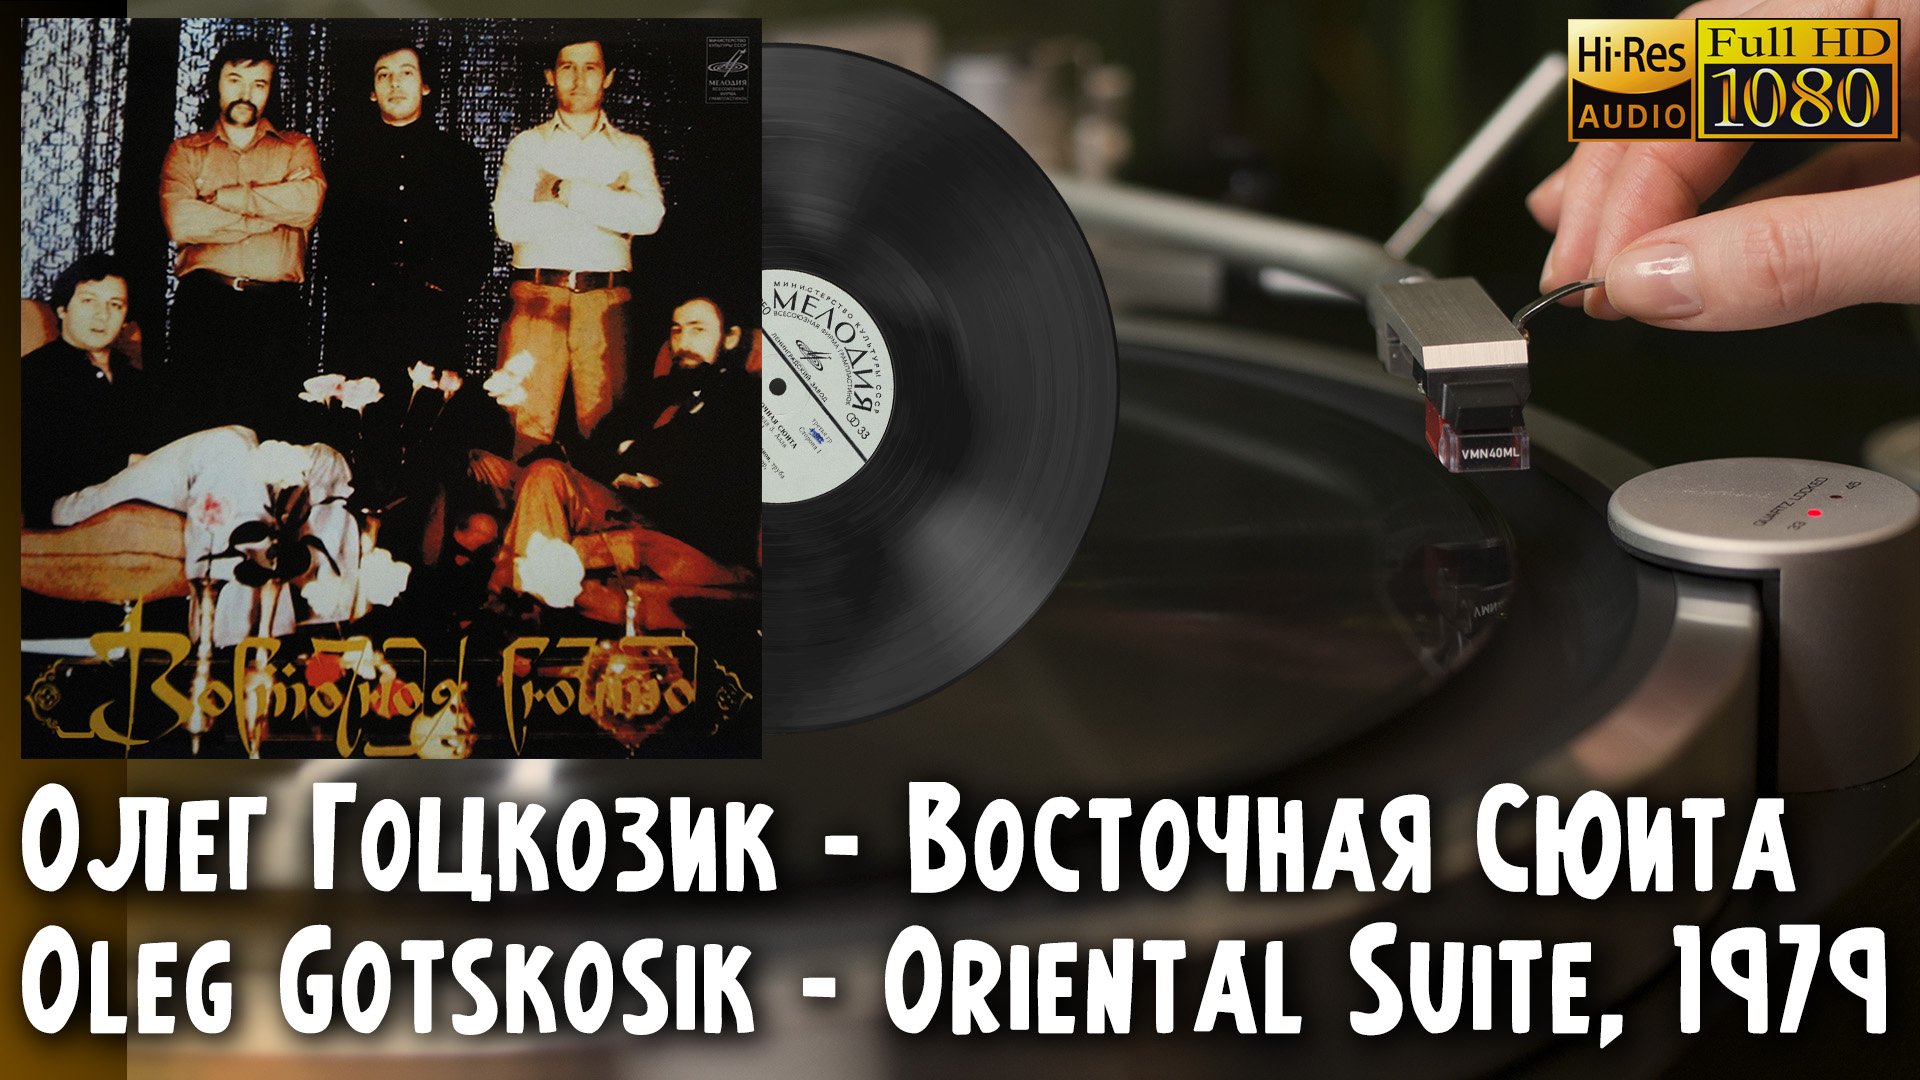 Олег Гоцкозик - Восточная Сюита / Oleg Gotskosik - Oriental Suite, 1989, Vinyl video 4K, 24bit/96kHz